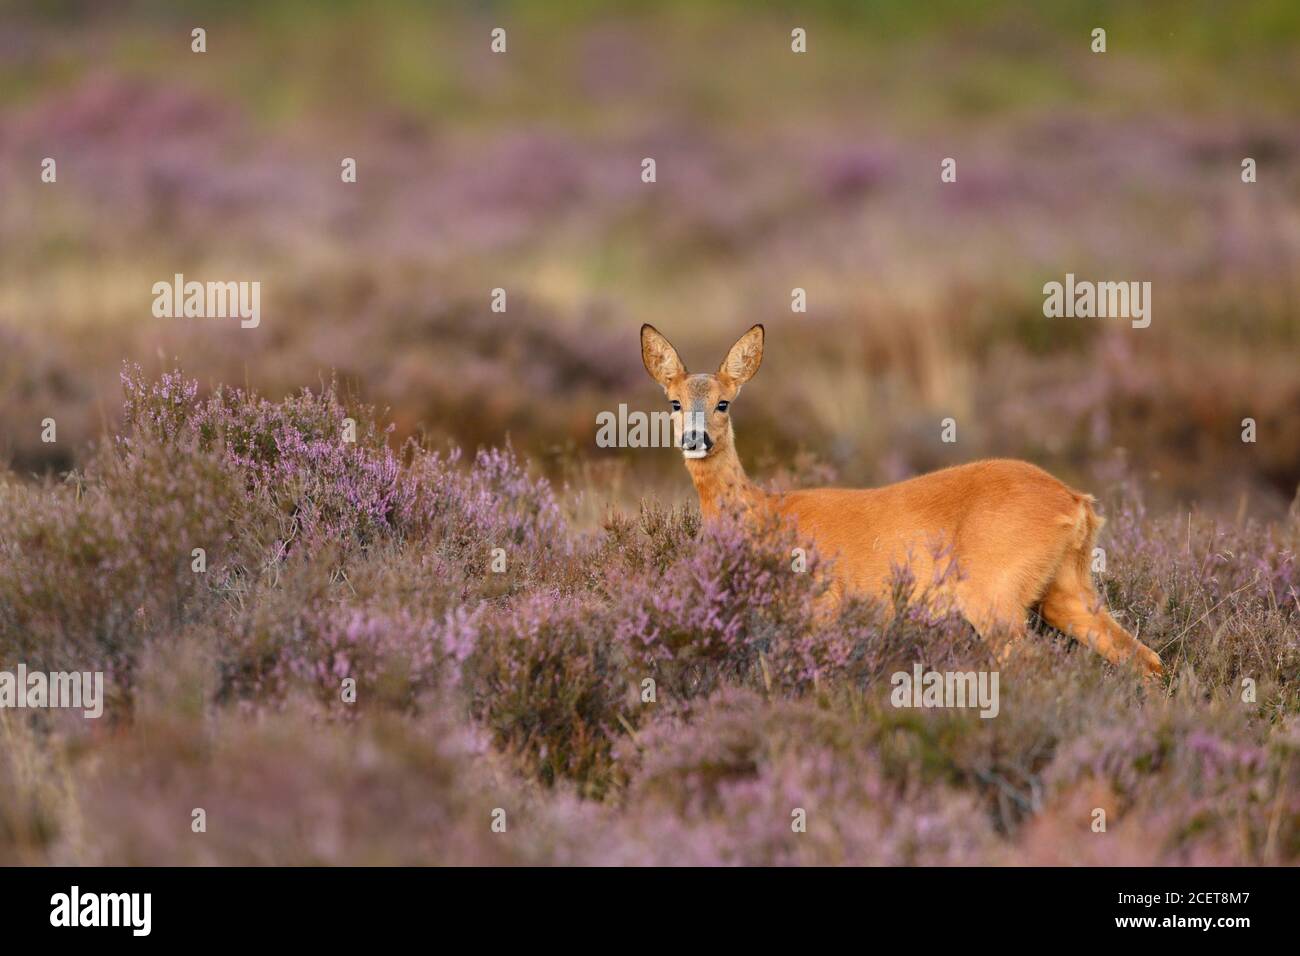 ROE Deer ( Capreolus capreolus ), femme, doe, debout dans la bruyère florissante violette, regardant attentivement, faune sauvage, Europe. Banque D'Images